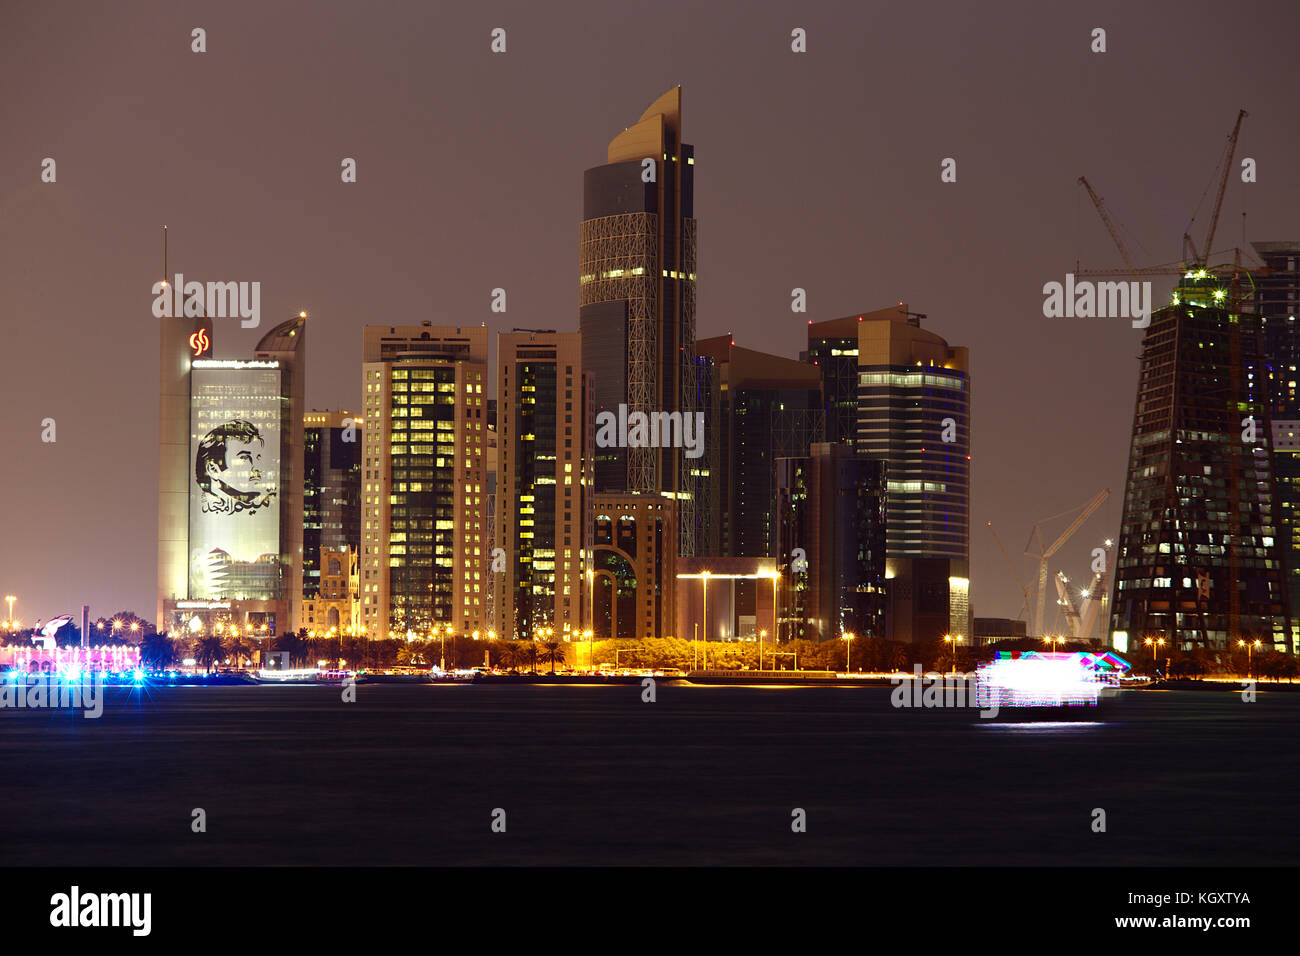 Doha, Qatar, noviembre 11, 2017: el horizonte de la ciudad de noche, con la torre del banco comercial y póster de emir Tamim Bin Hamad, a la izquierda. Una brillantemente iluminada Foto de stock